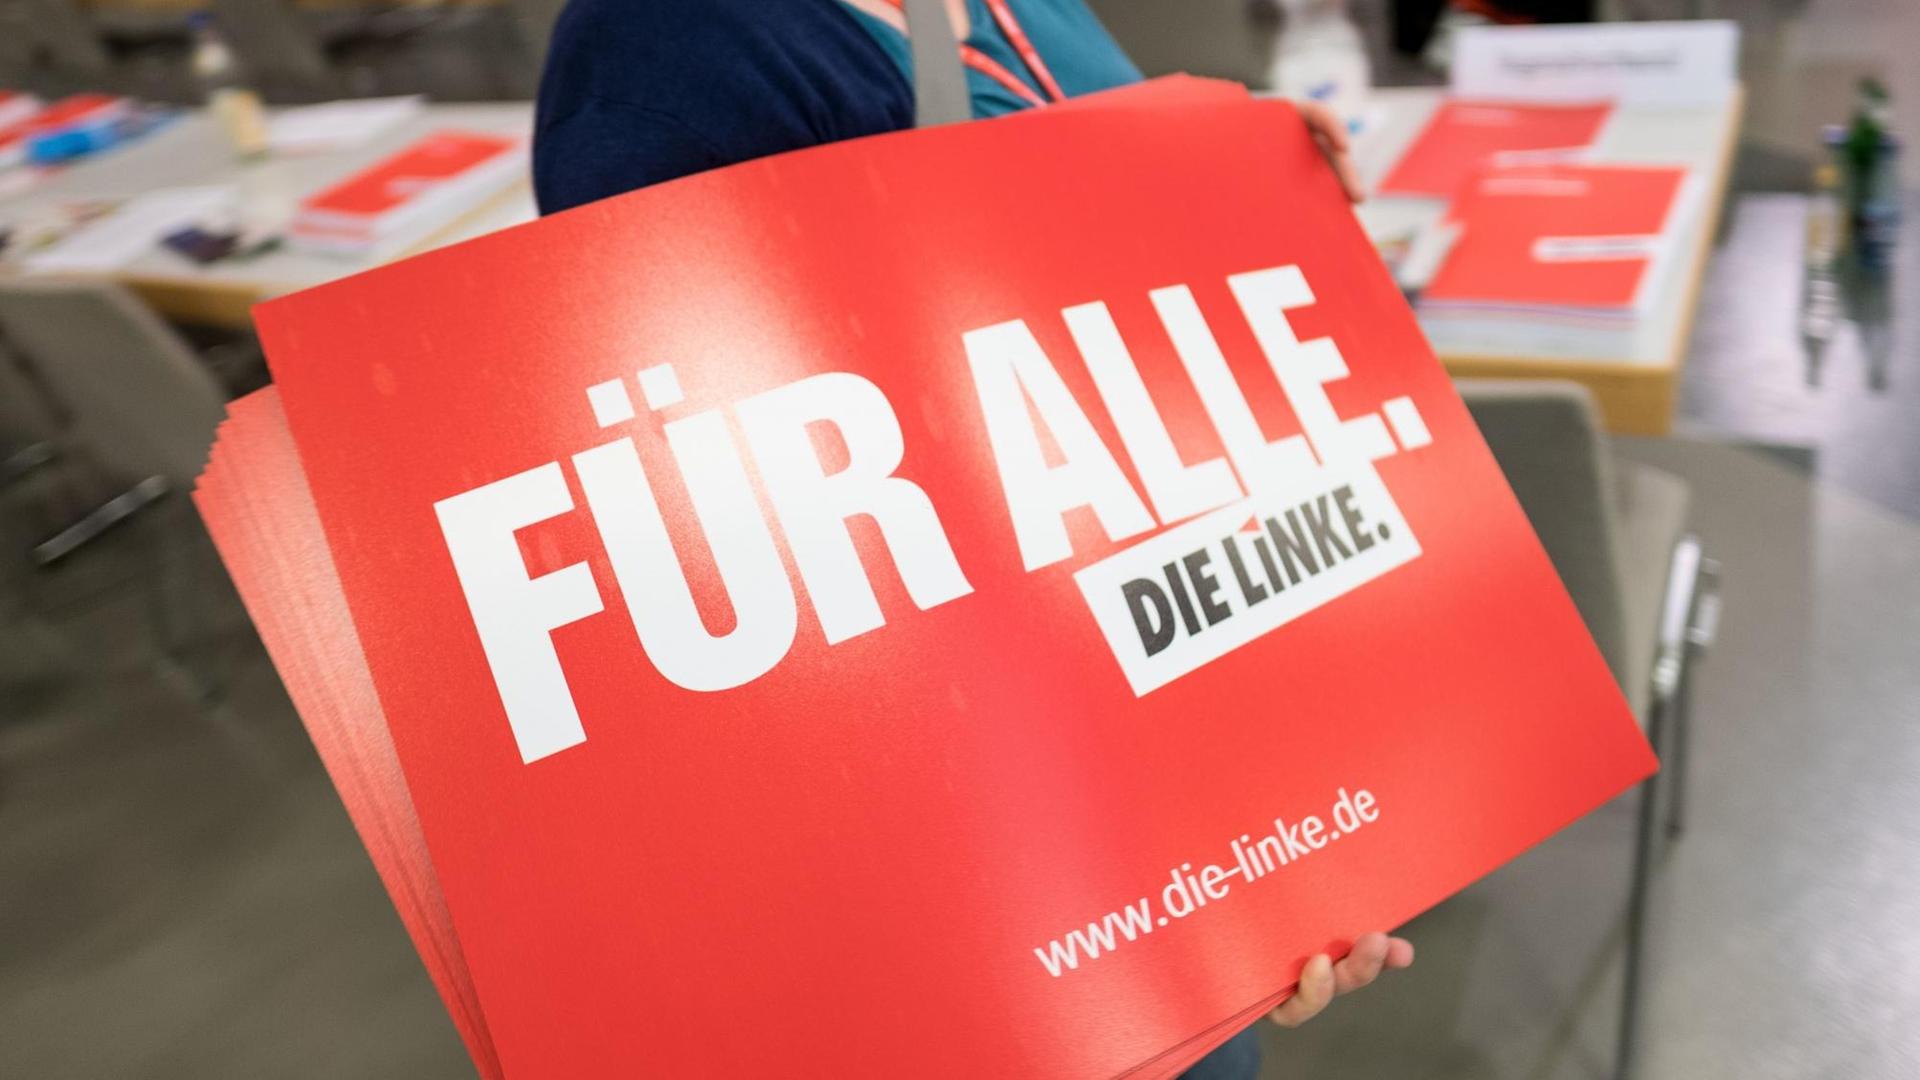 Parteimitglieder verteilen am 10.06.2017 vor Beginn des Bundesparteitages der Linken in Hannover (Niedersachsen) Plakate. Noch bis zum 11.06.2017 stimmt Die Linke auf ihrem Parteitag die Kernpunkte ihres Wahlprogramms für die Bundestagswahl ab.